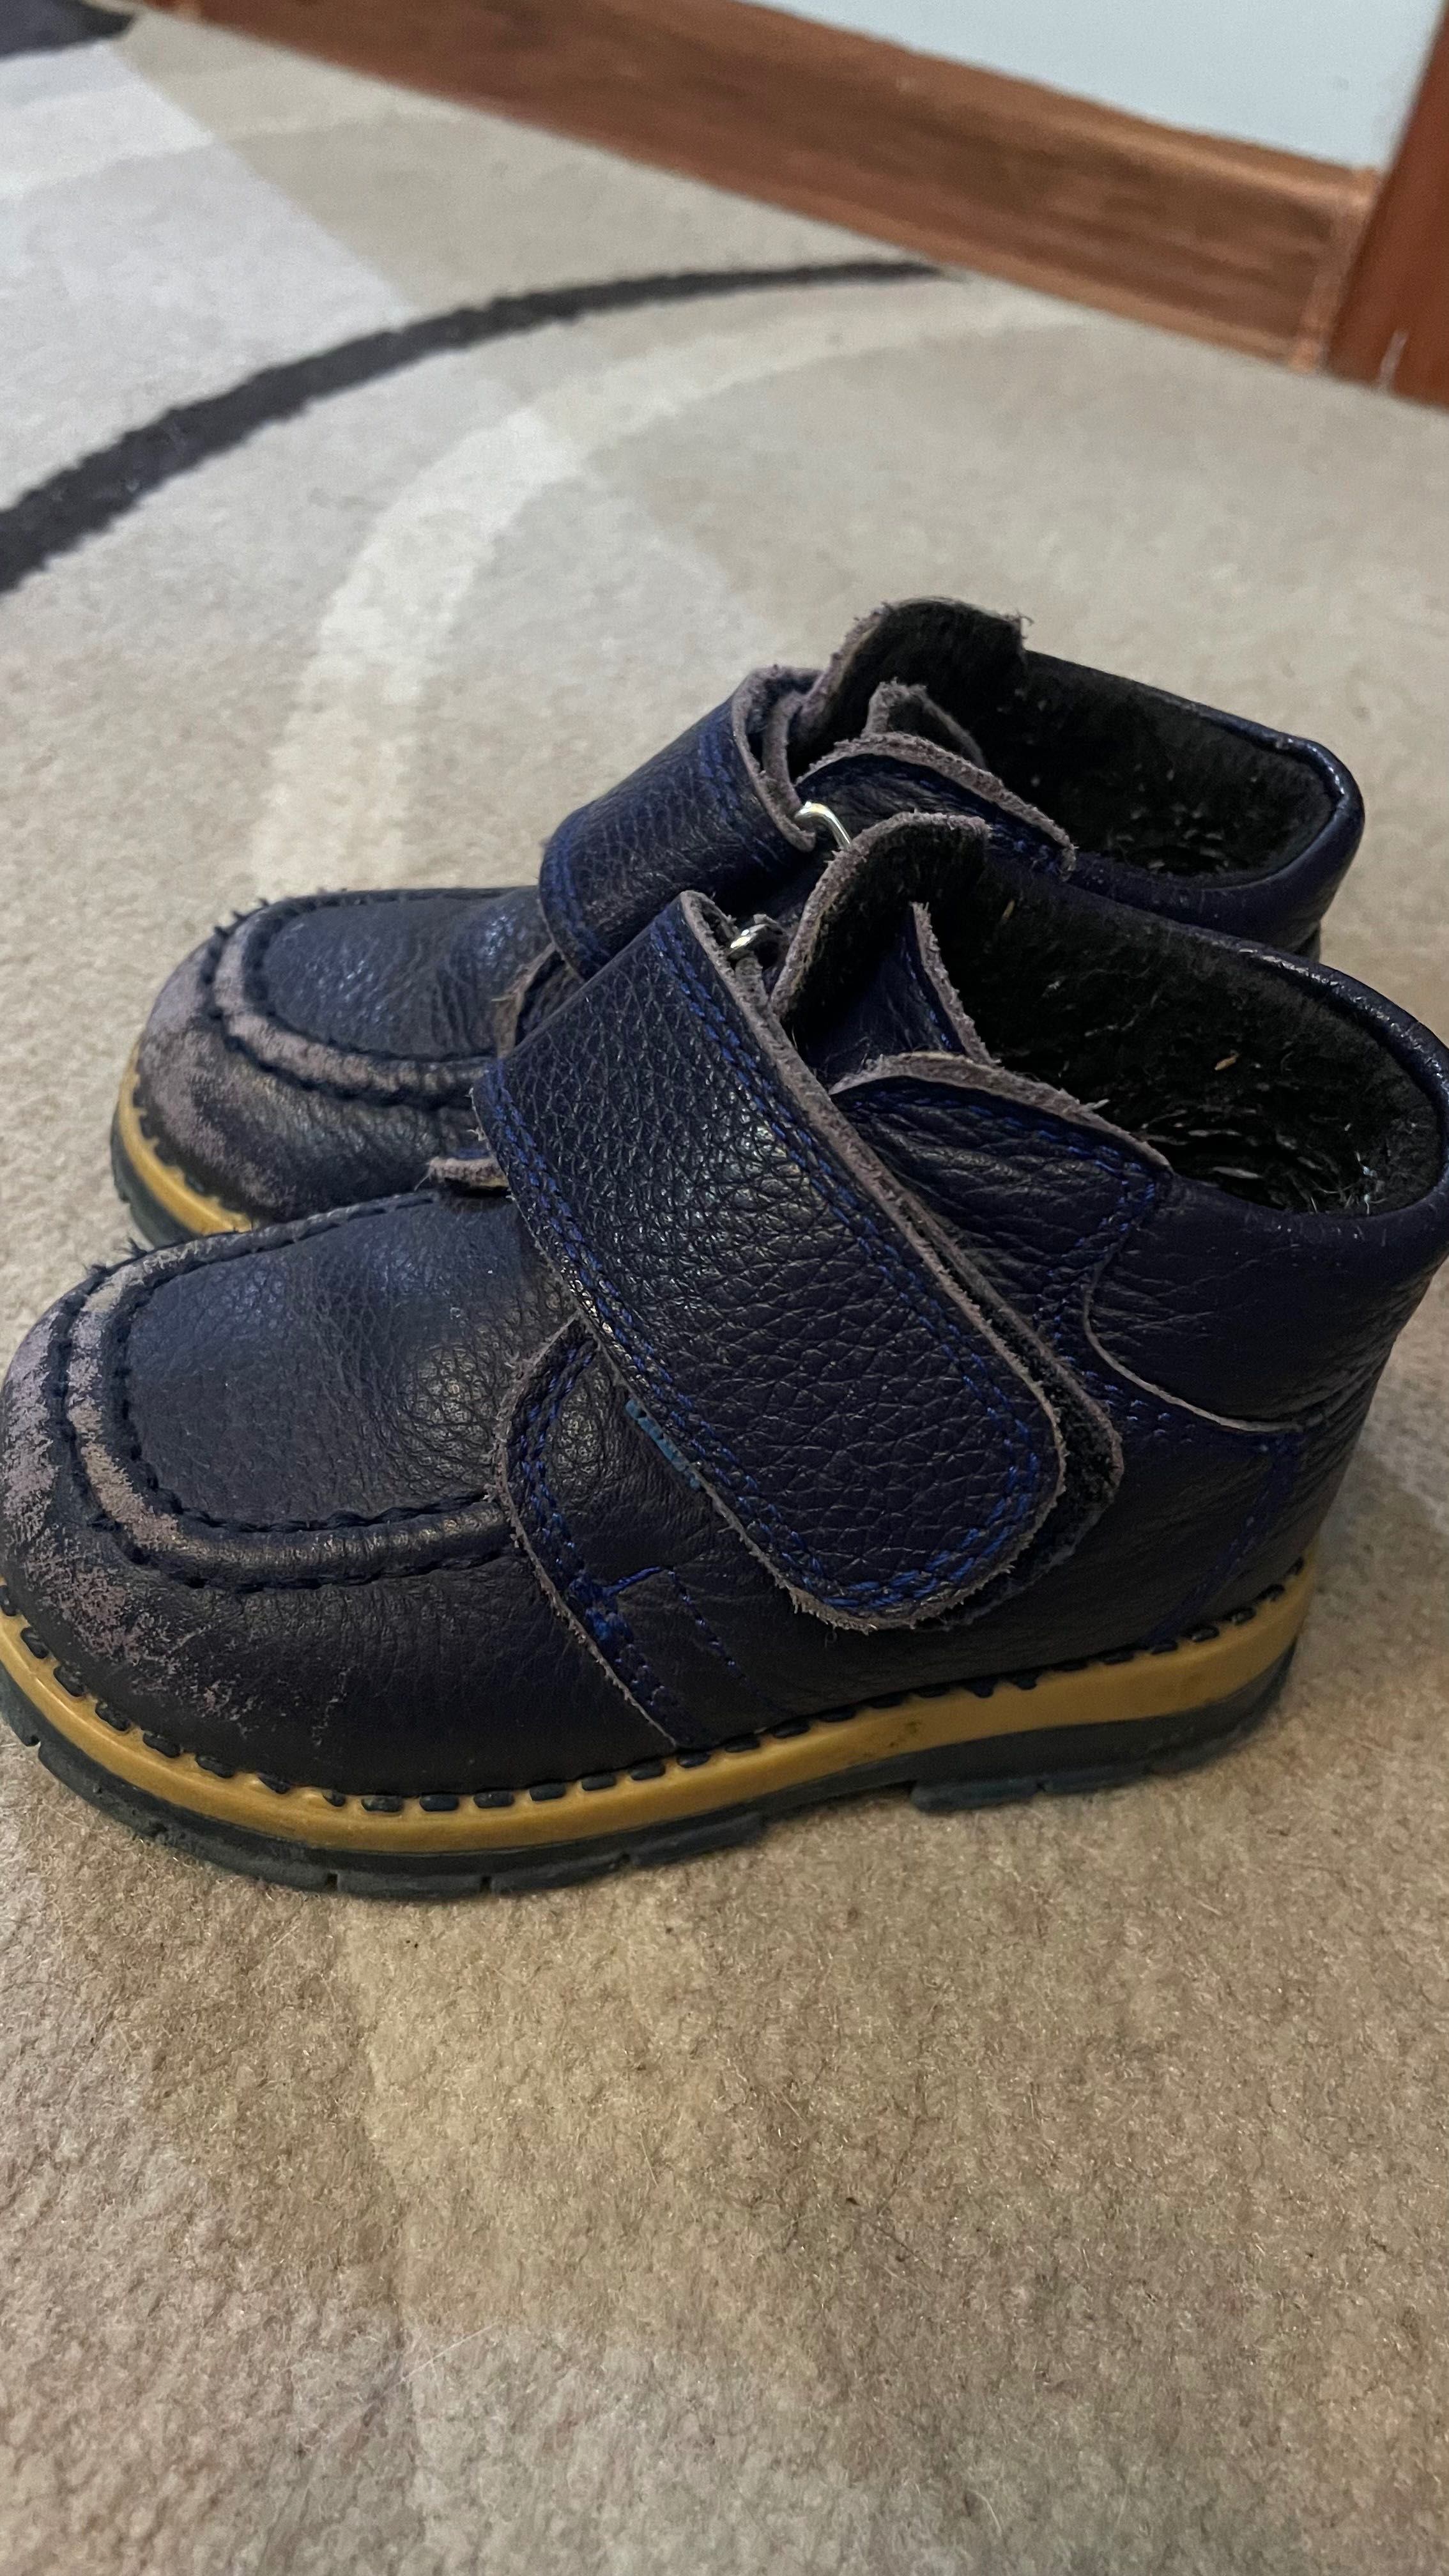 Обувь для мальчика 1,5-2 года